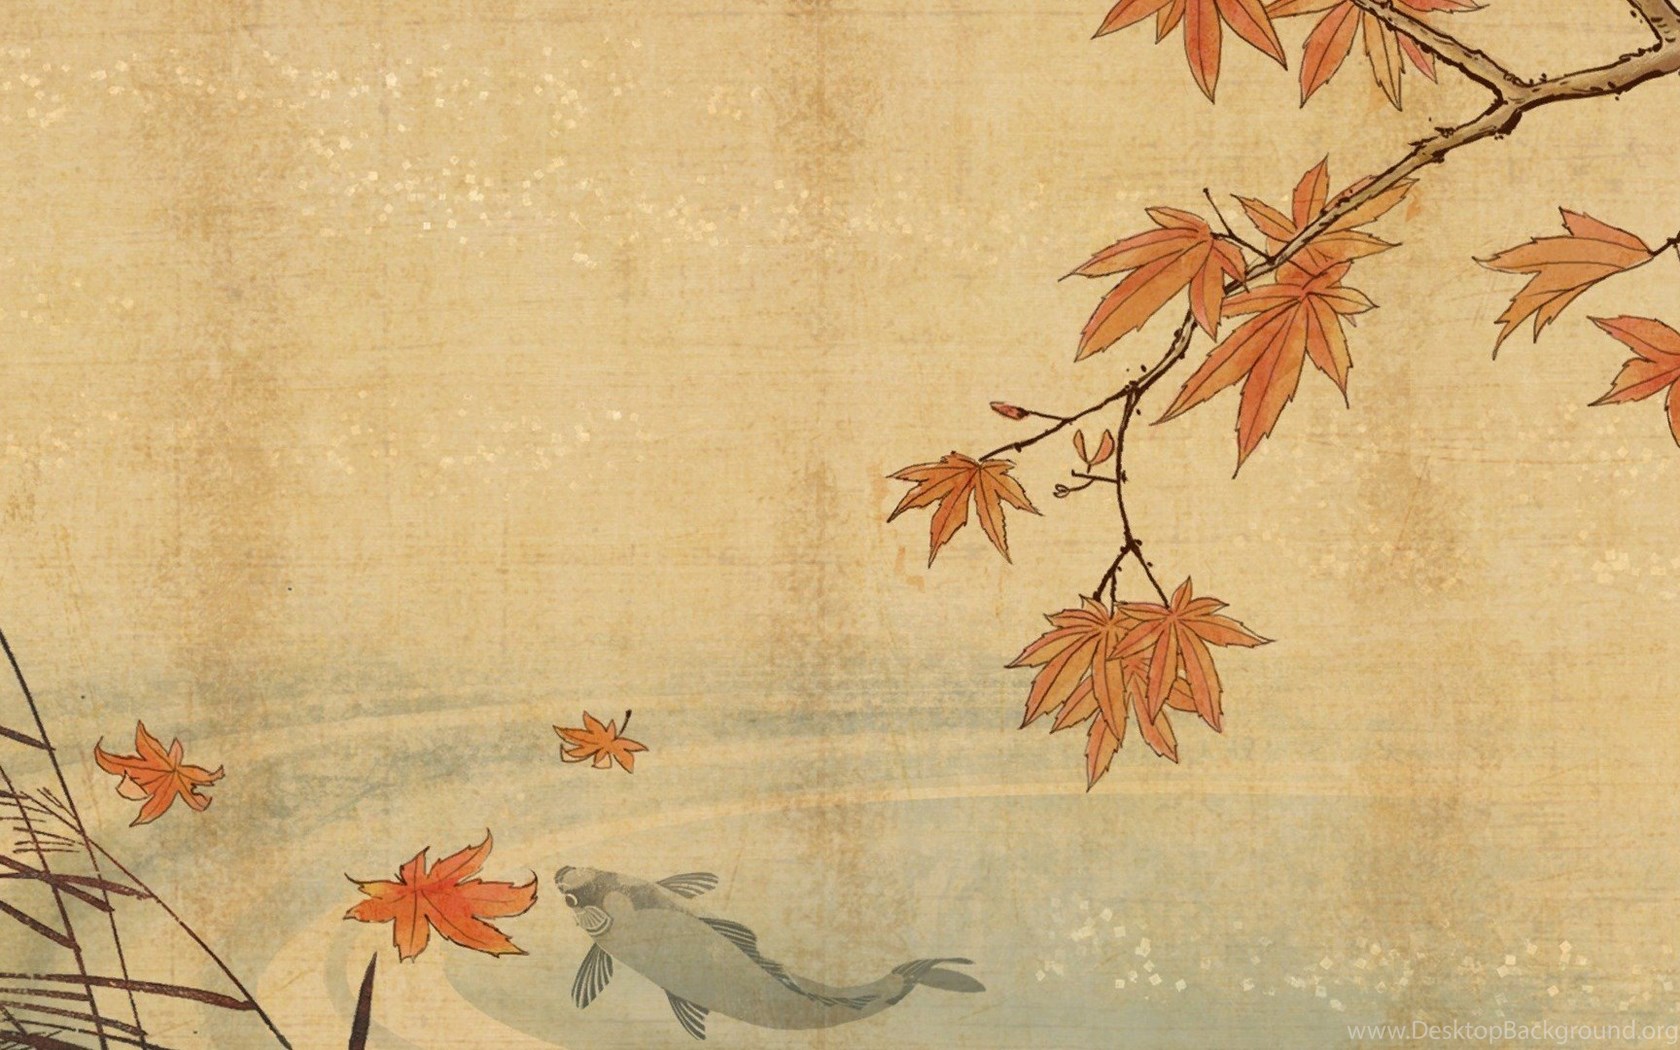 Koi Fish Art Wallpaper Bing Image Desktop Background